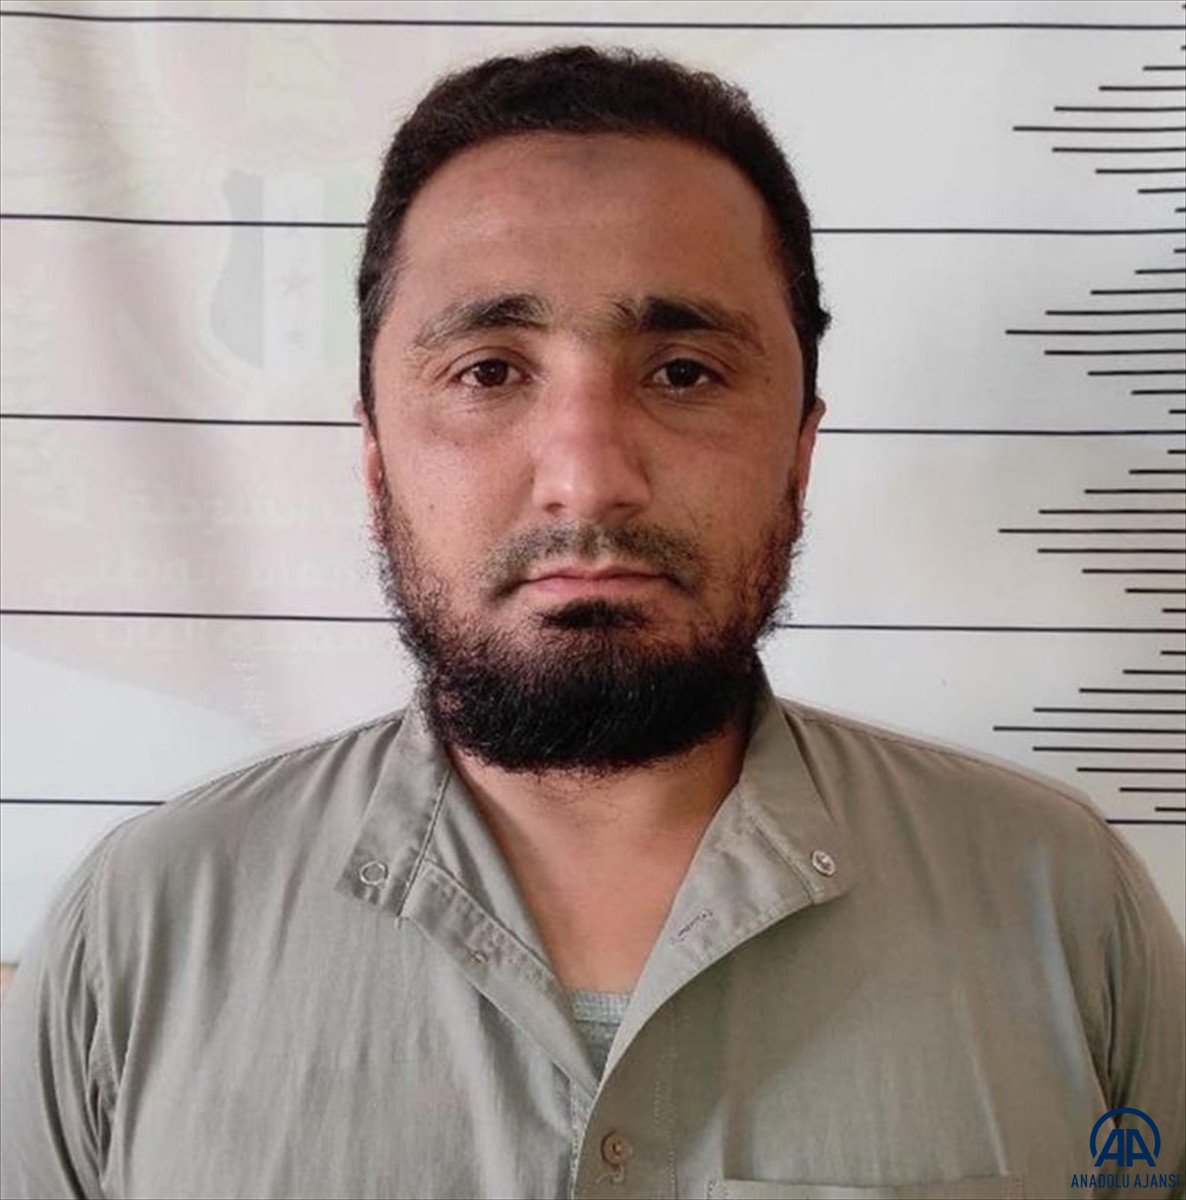 El Bab da 9 DEAŞ lı terörist yakalandı #2